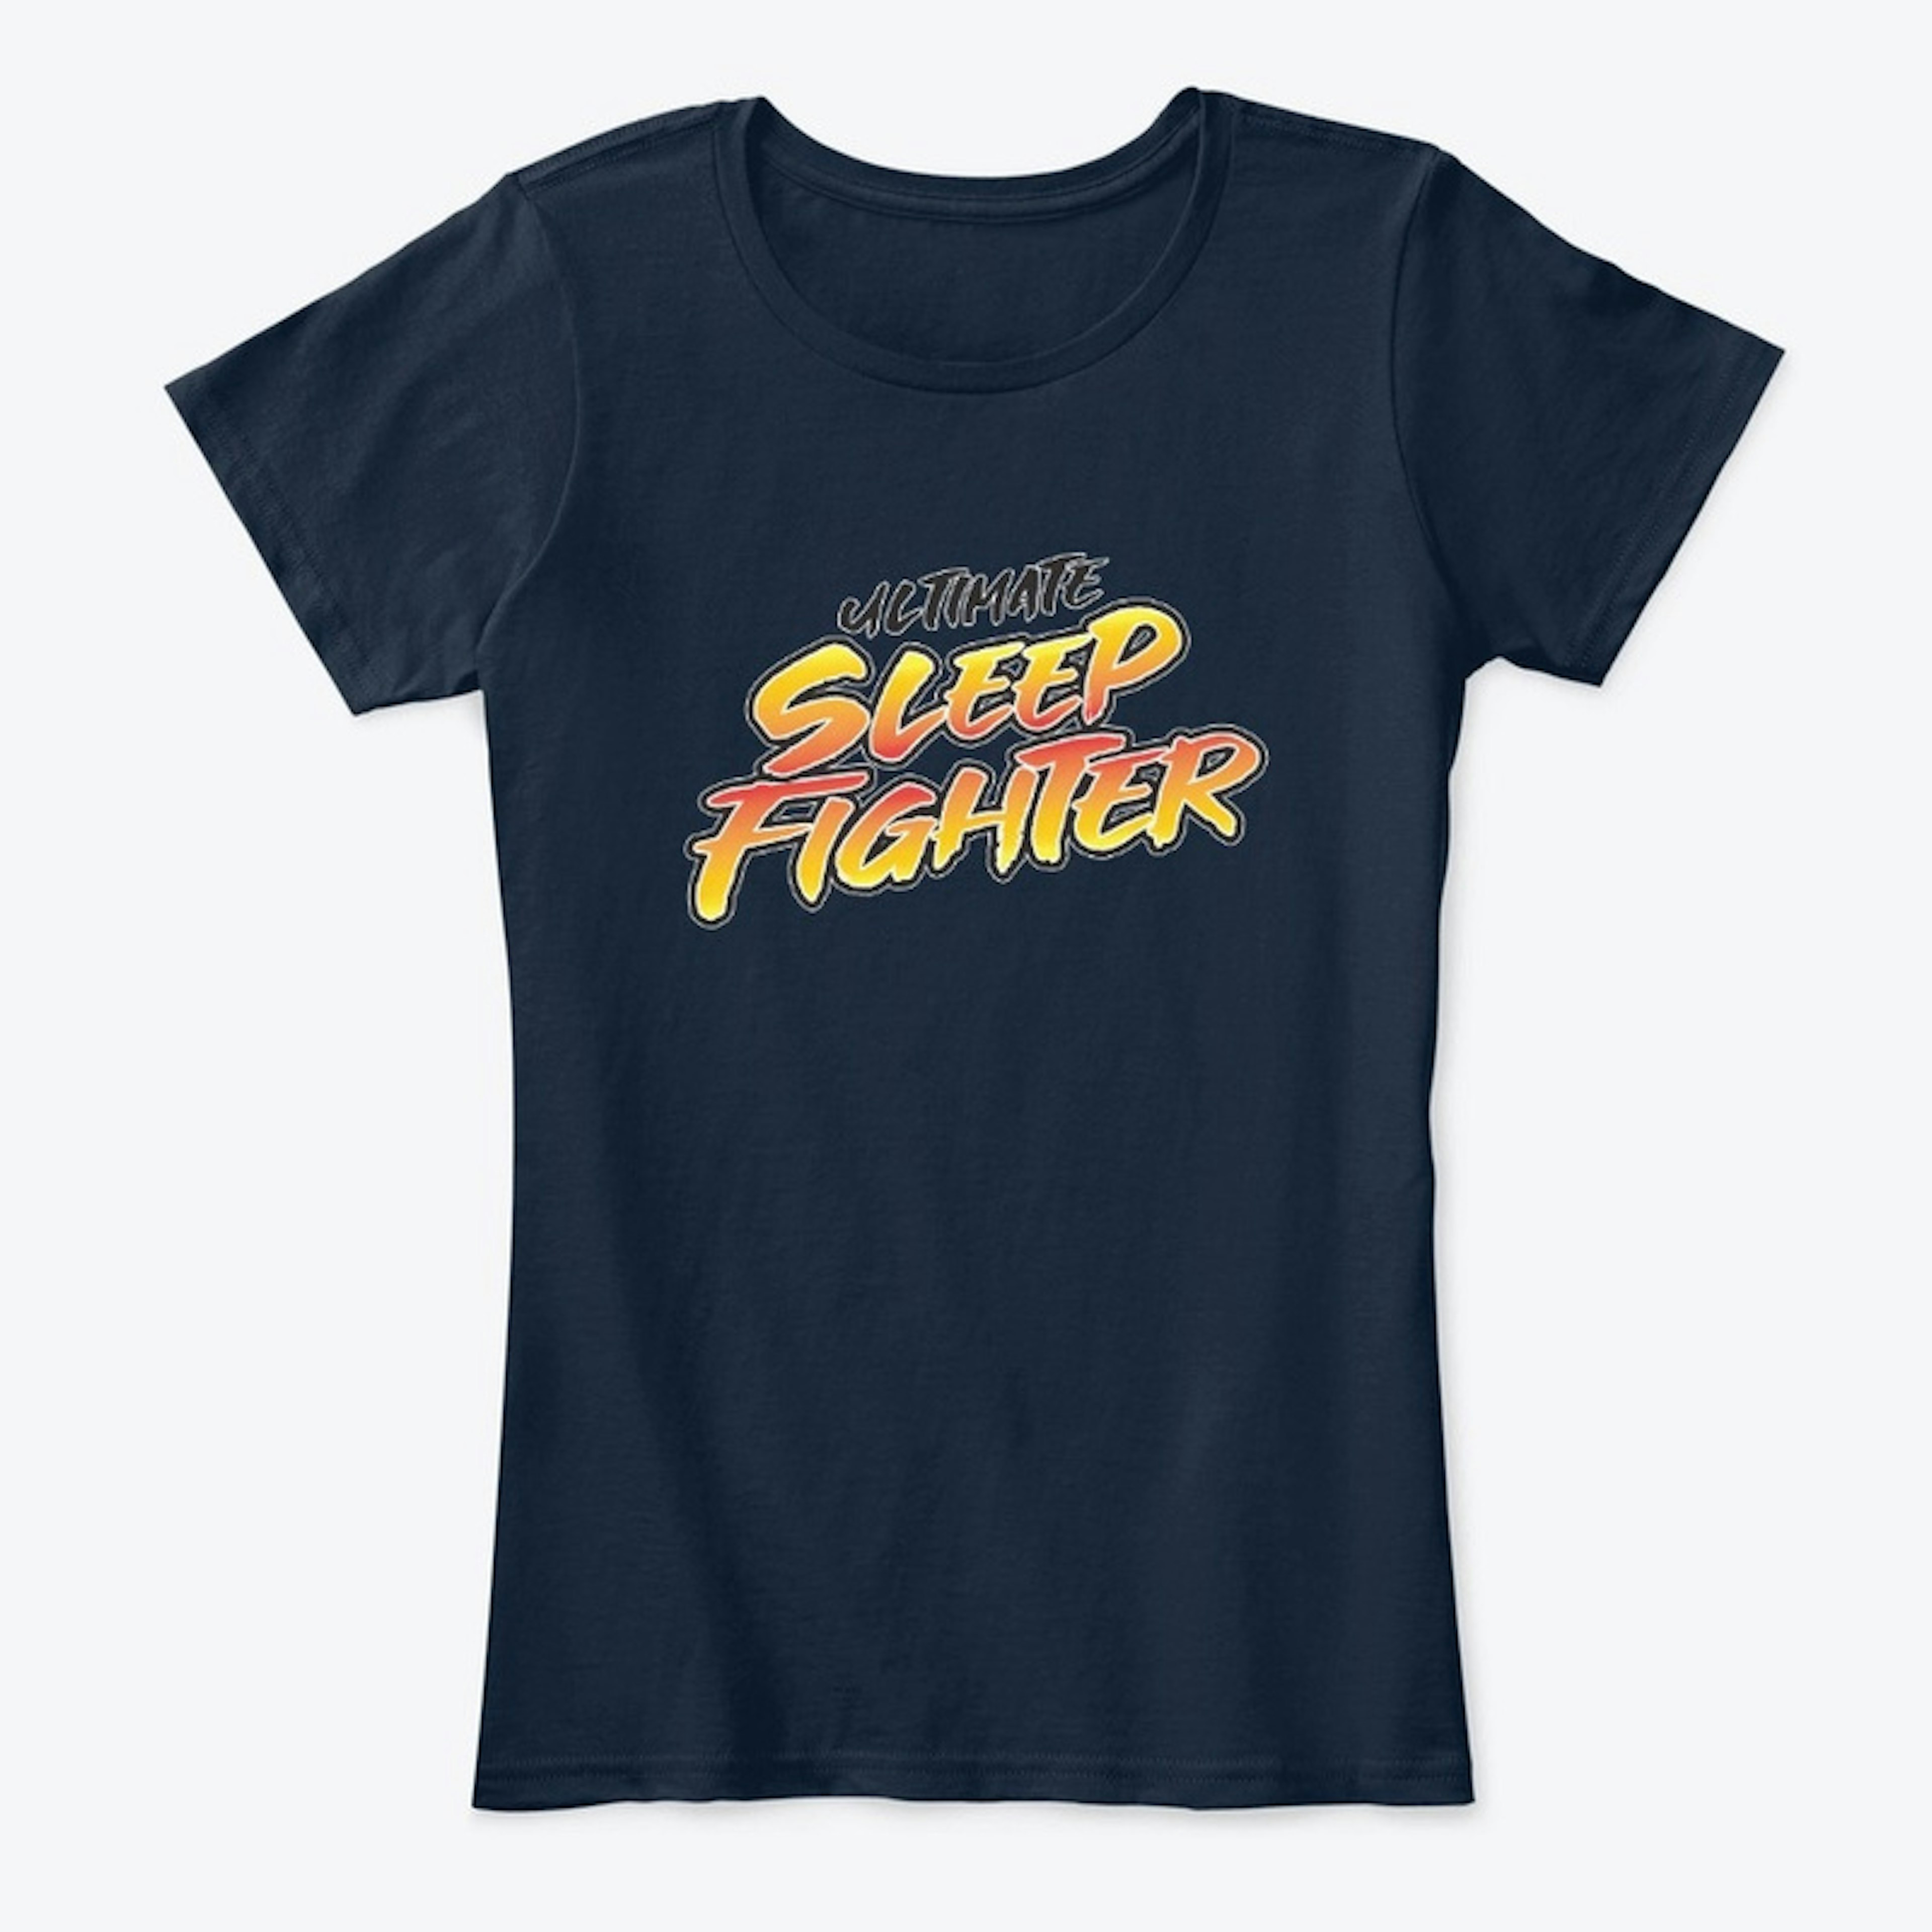 Ultimate Sleep Fighter